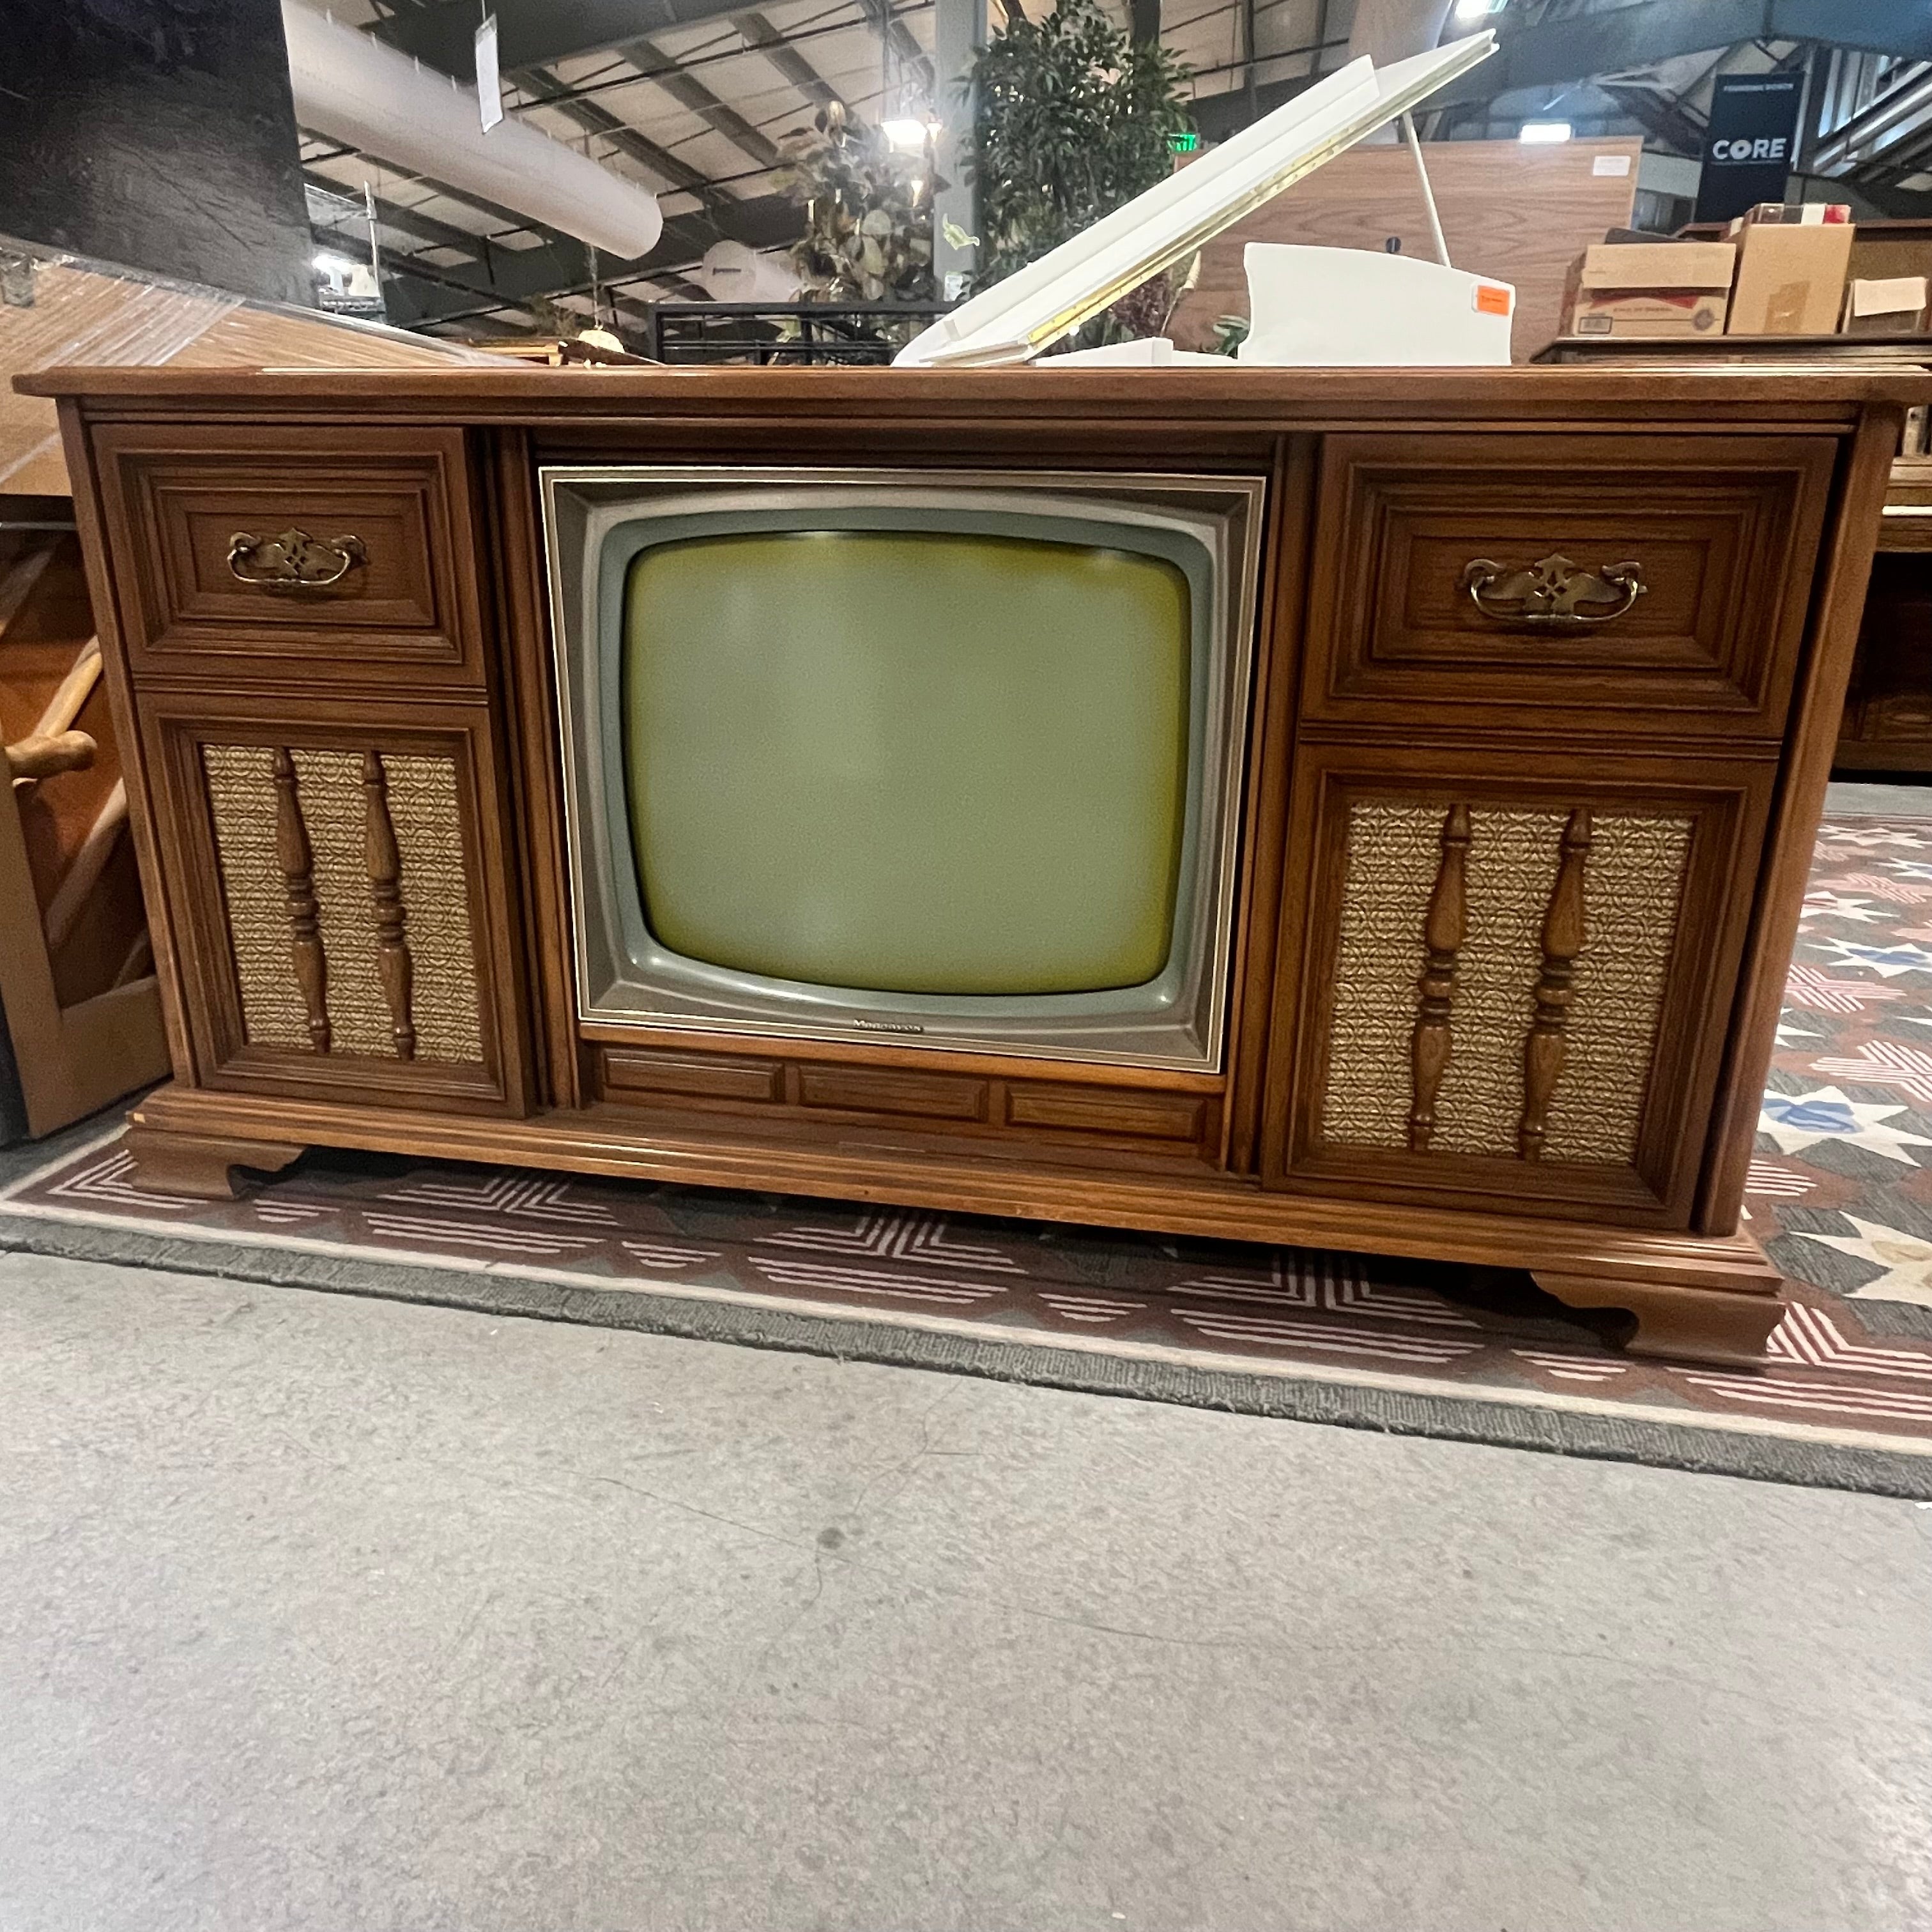 Vintage Magnavox TV Console 24"x 58"x 30"